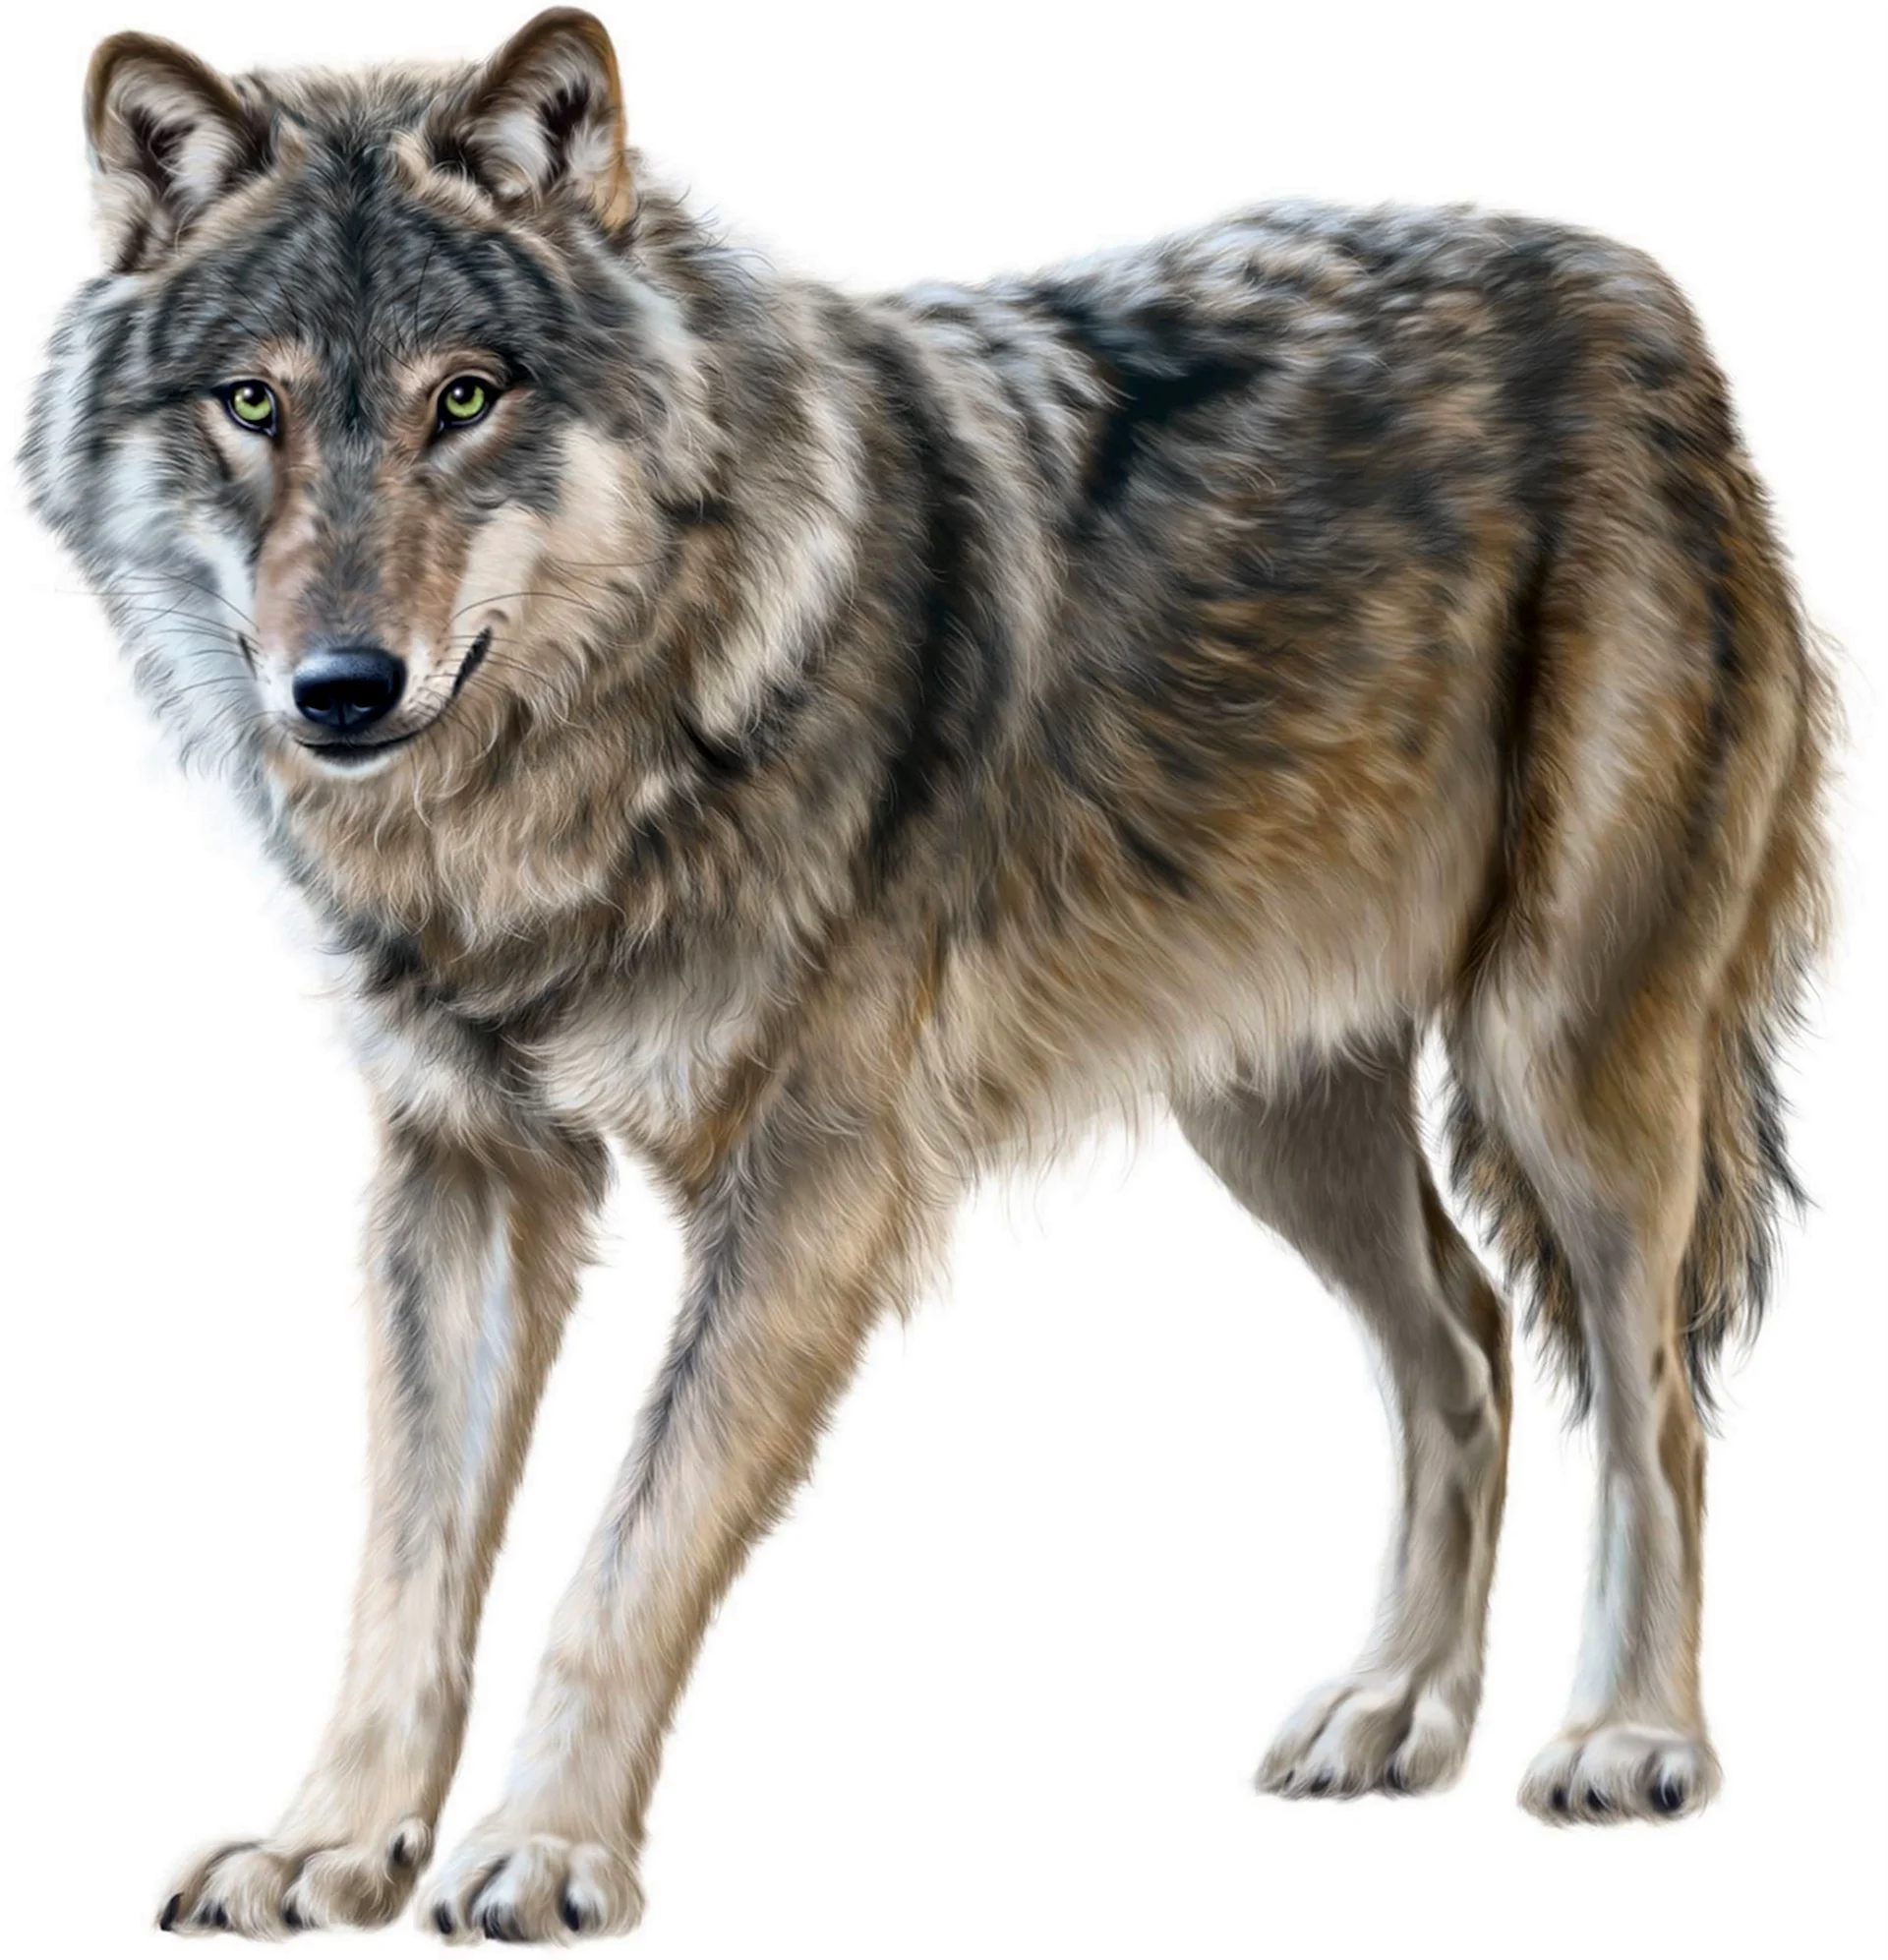 Волк на прозрачном фоне